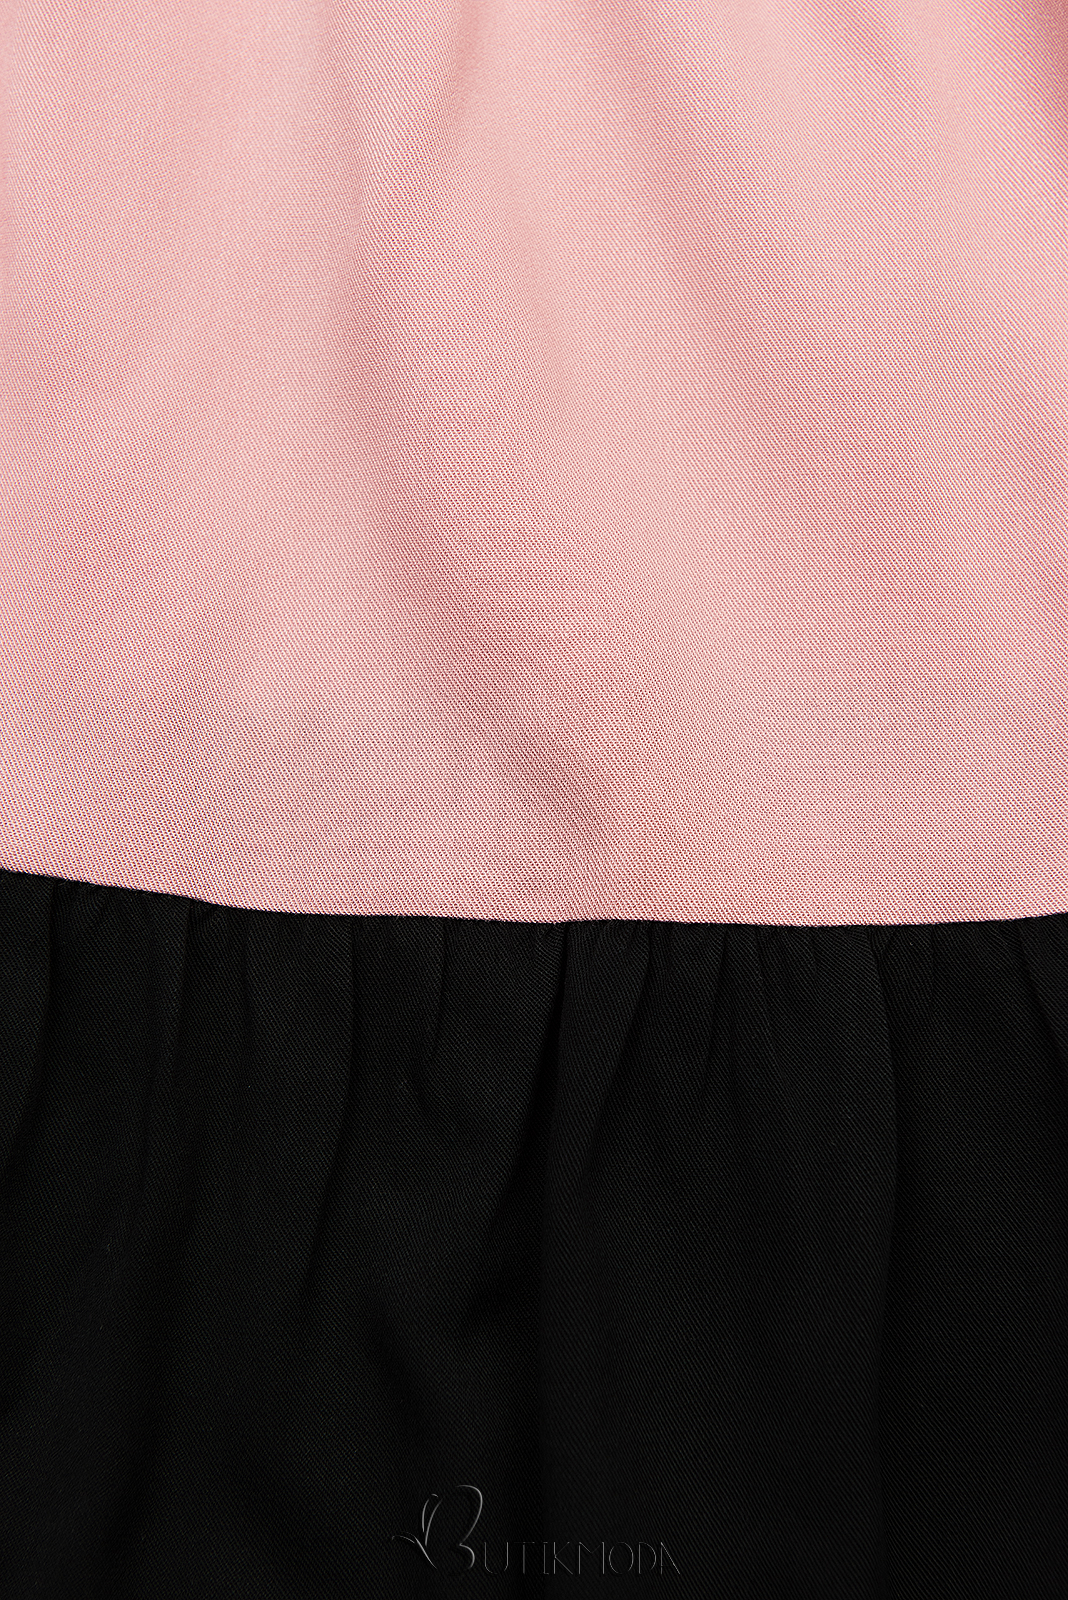 Rochie de vară din viscoză albă/roz/neagră